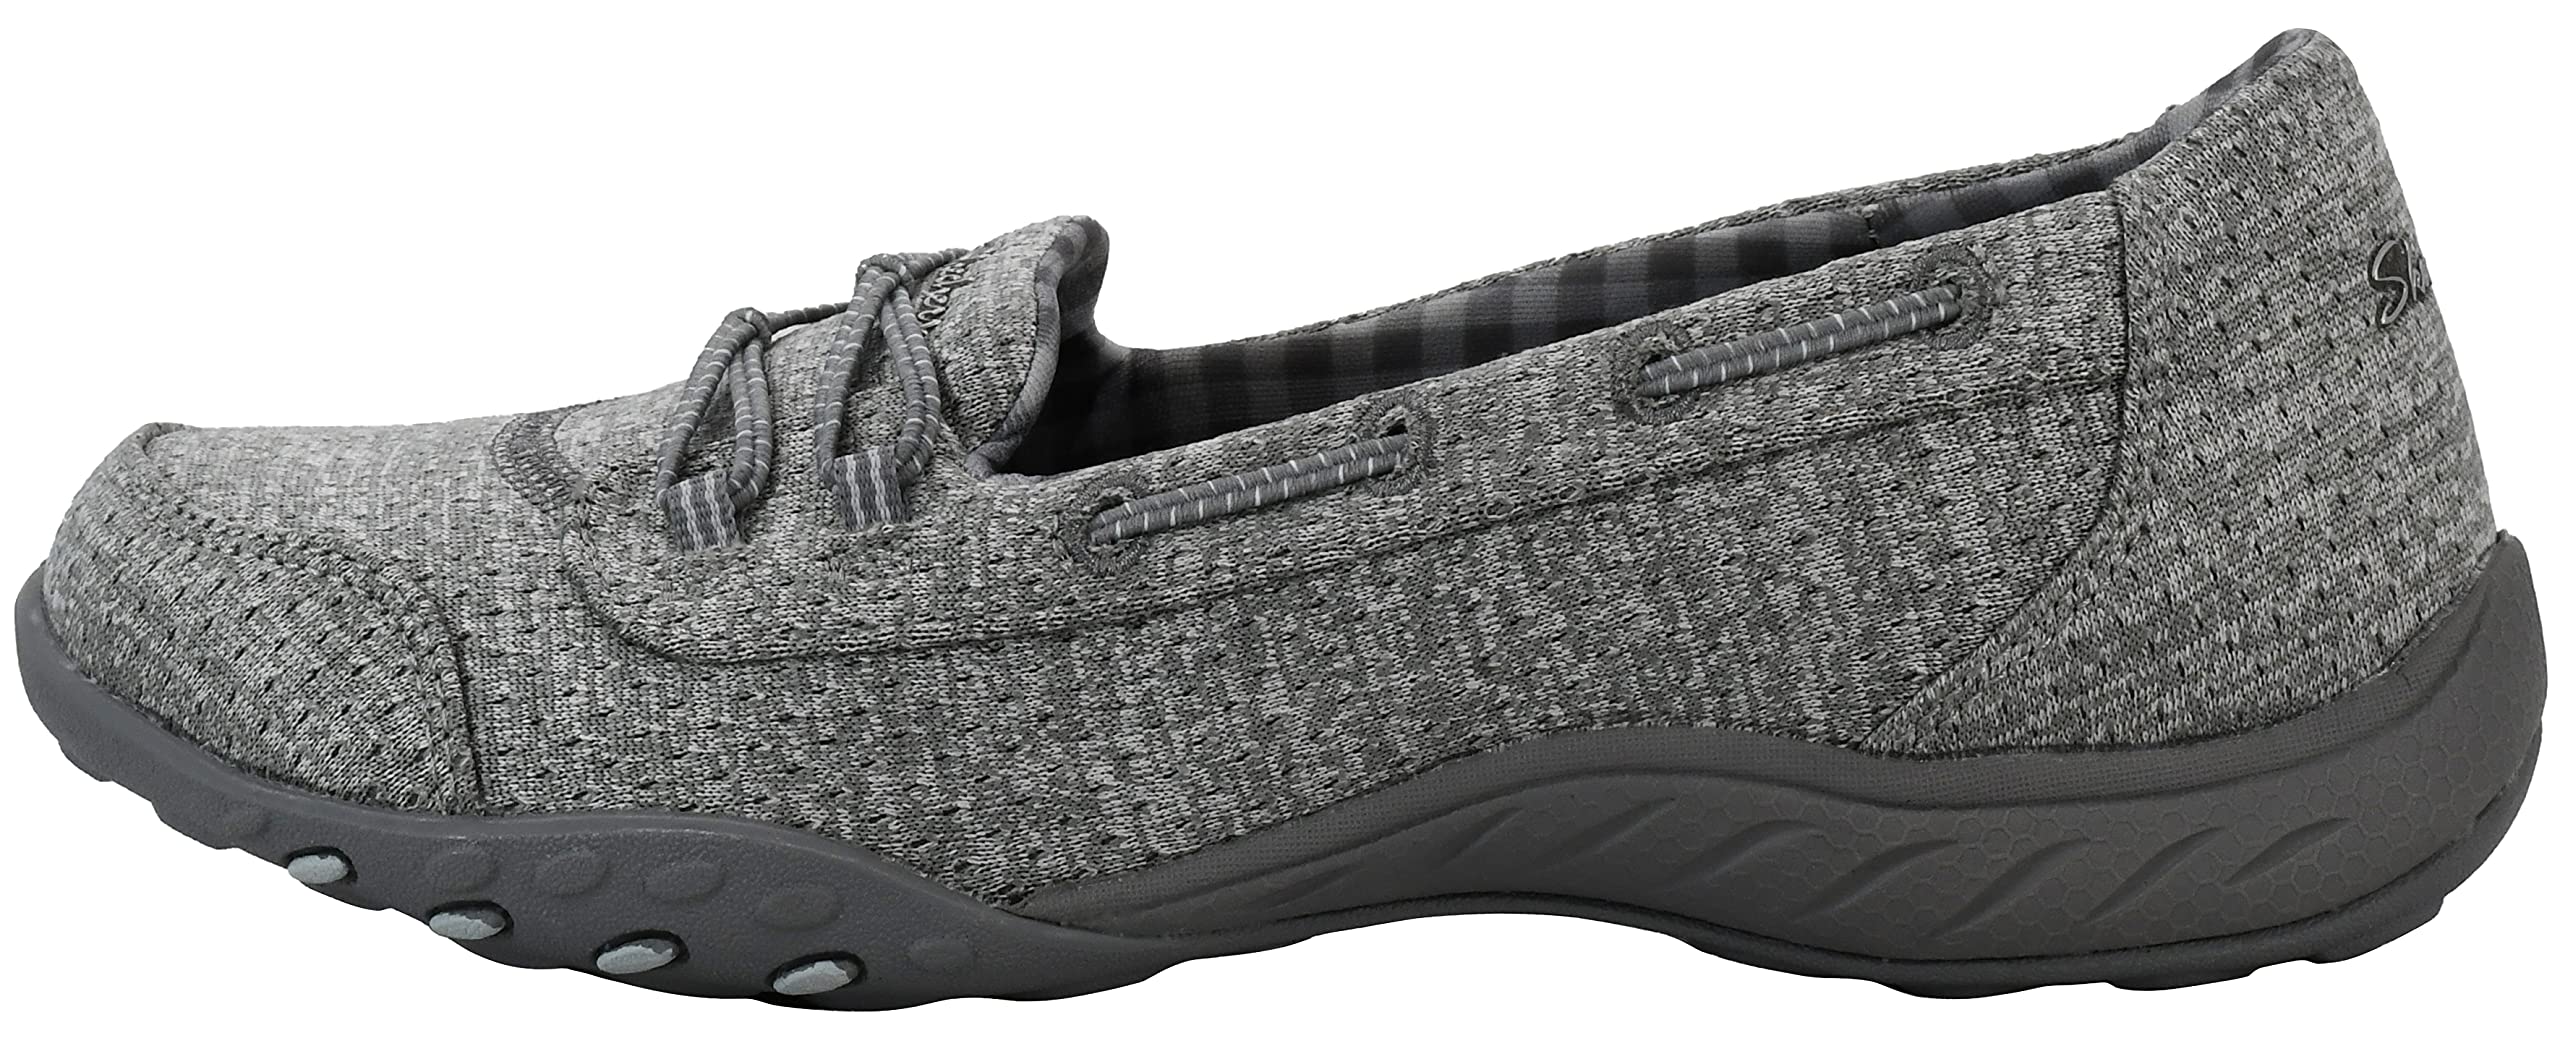 Skechers Women's Breathe Easy-Good Influence Sneaker, Grey, 8 M US